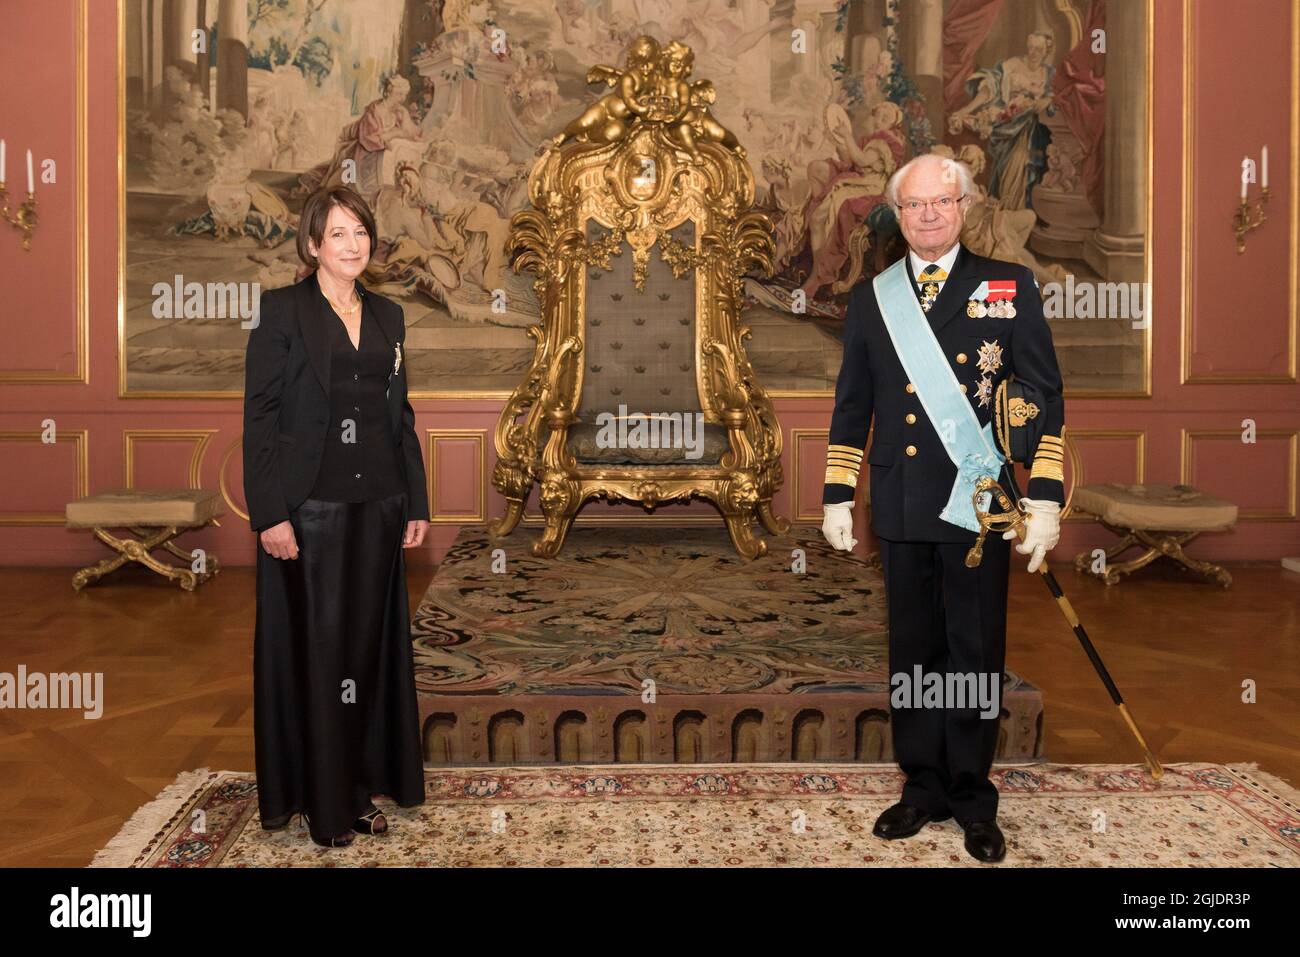 ESTOCOLMO 20201109 Cristina Latorre Sancho, la nueva Embajadora de España  en Suecia, durante una audiencia con el Rey Carl XVI Gustaf en el Palacio  Real de Estocolmo. Foto: Sanna Argus TirÃ/The Royal